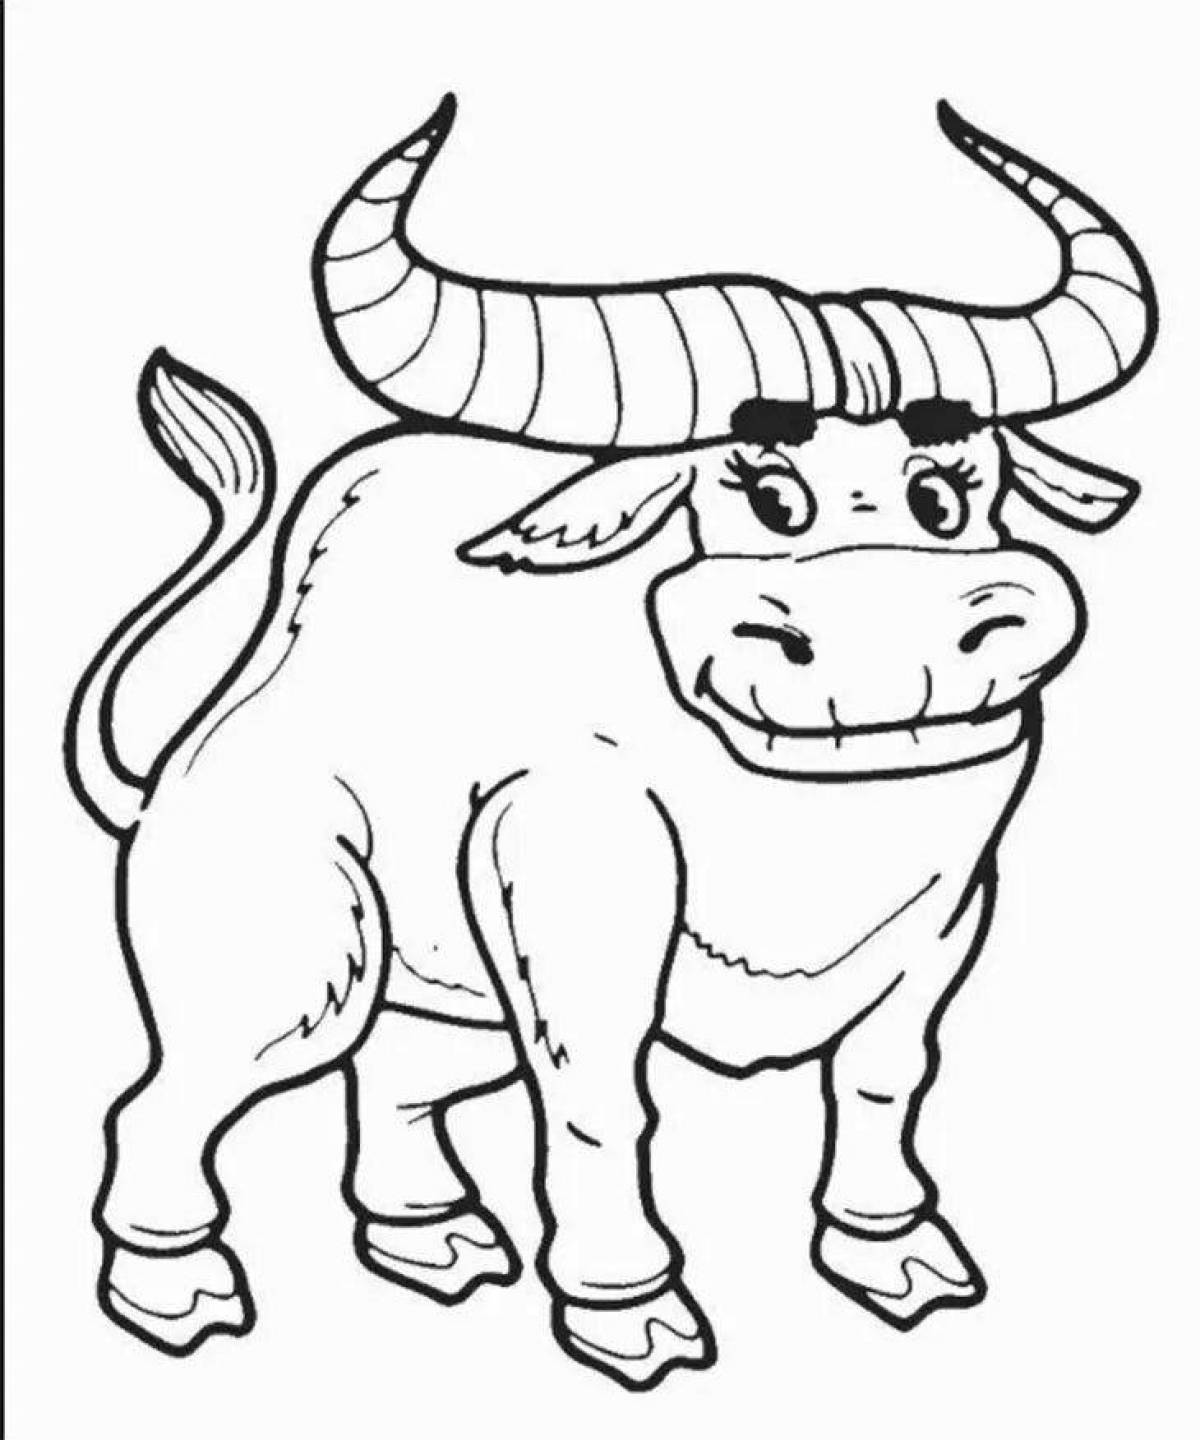 Comic bull coloring book for kids